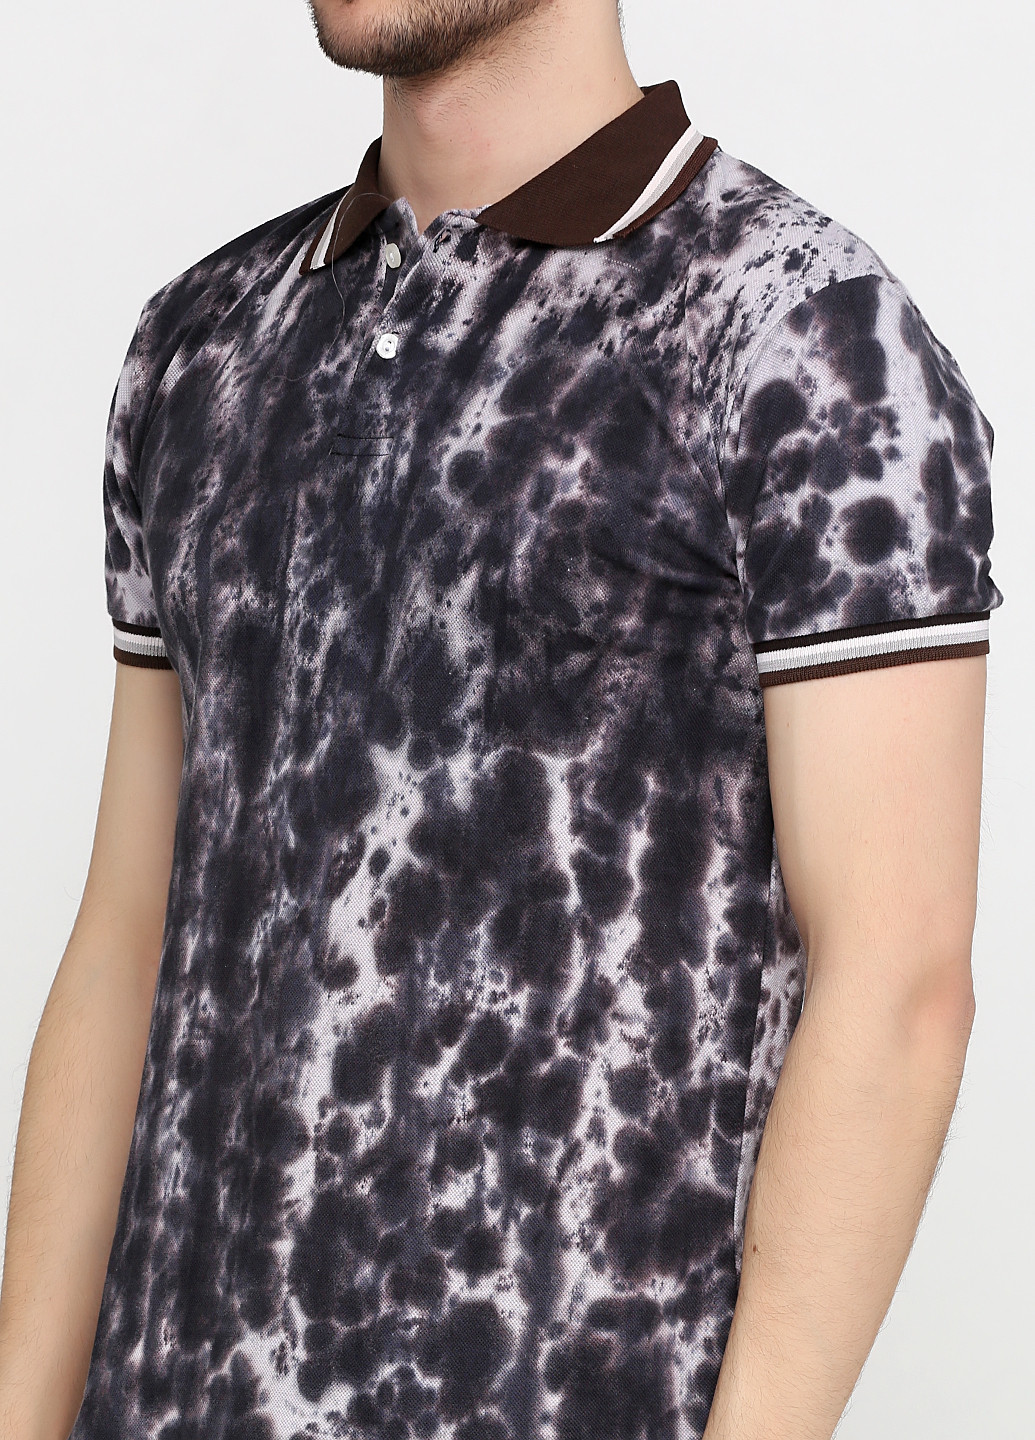 Серо-коричневая футболка-поло для мужчин Chiarotex с абстрактным узором